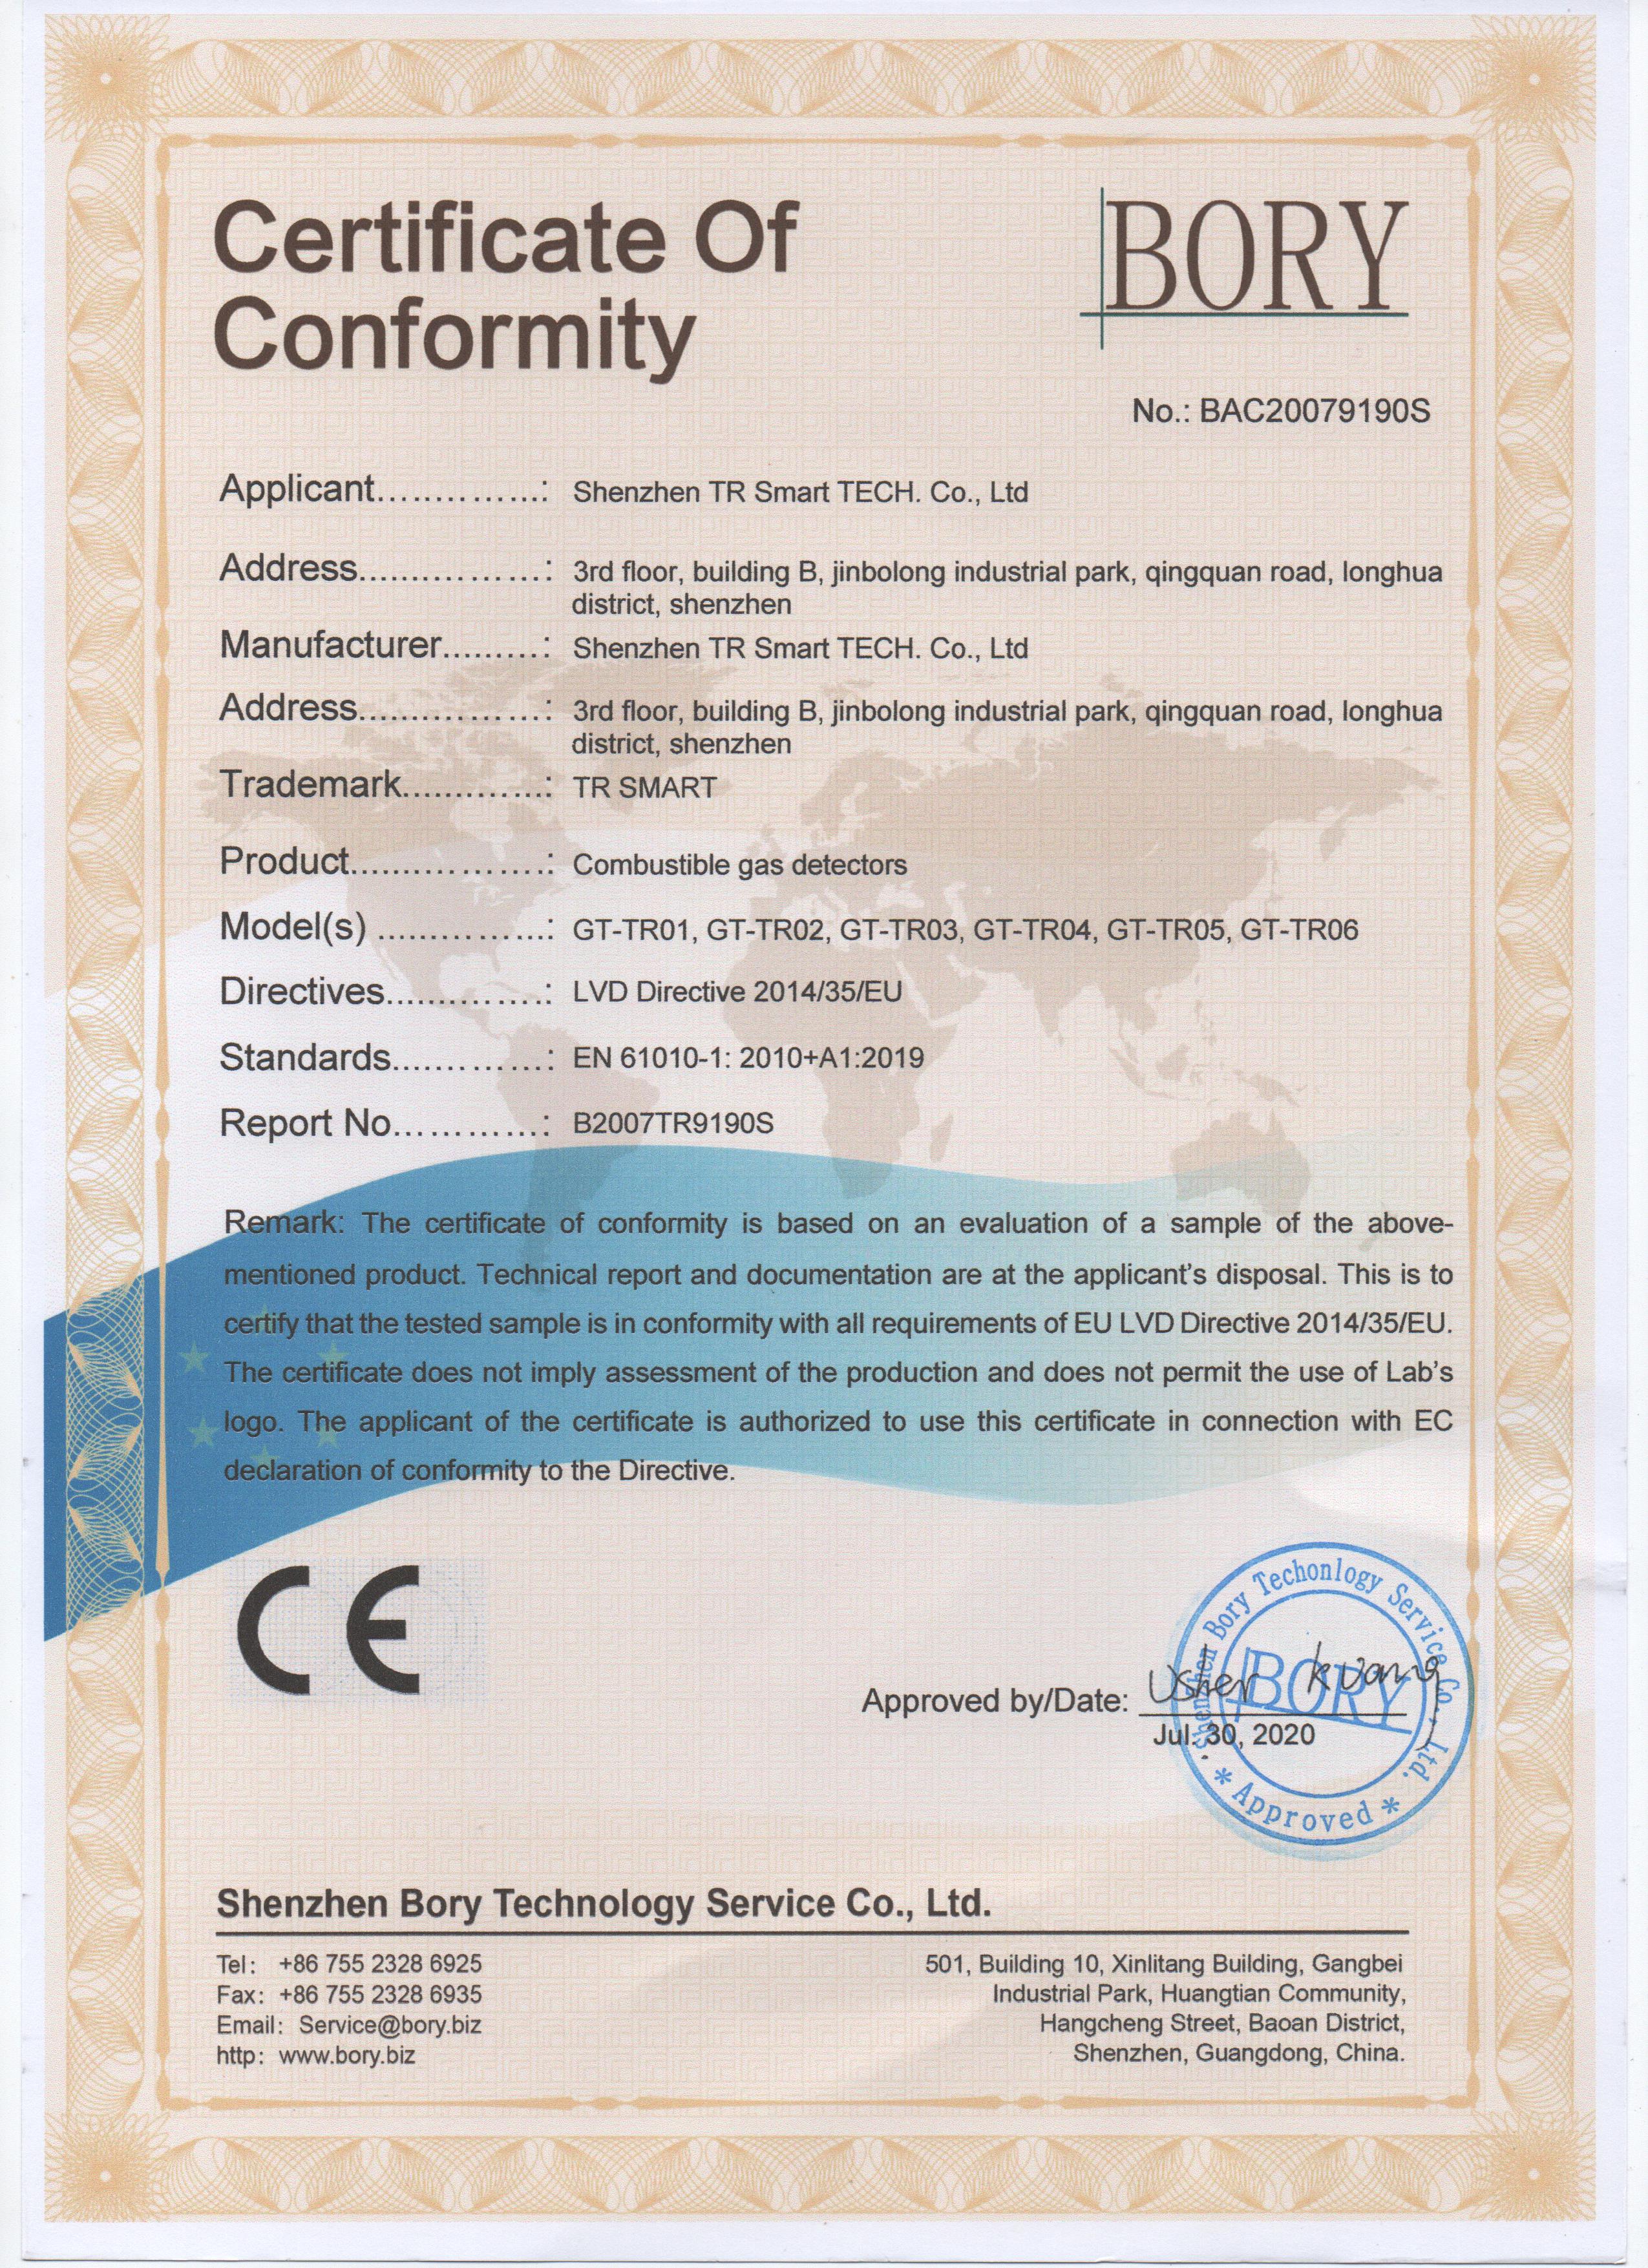 点型可燃气体探测器CE证书